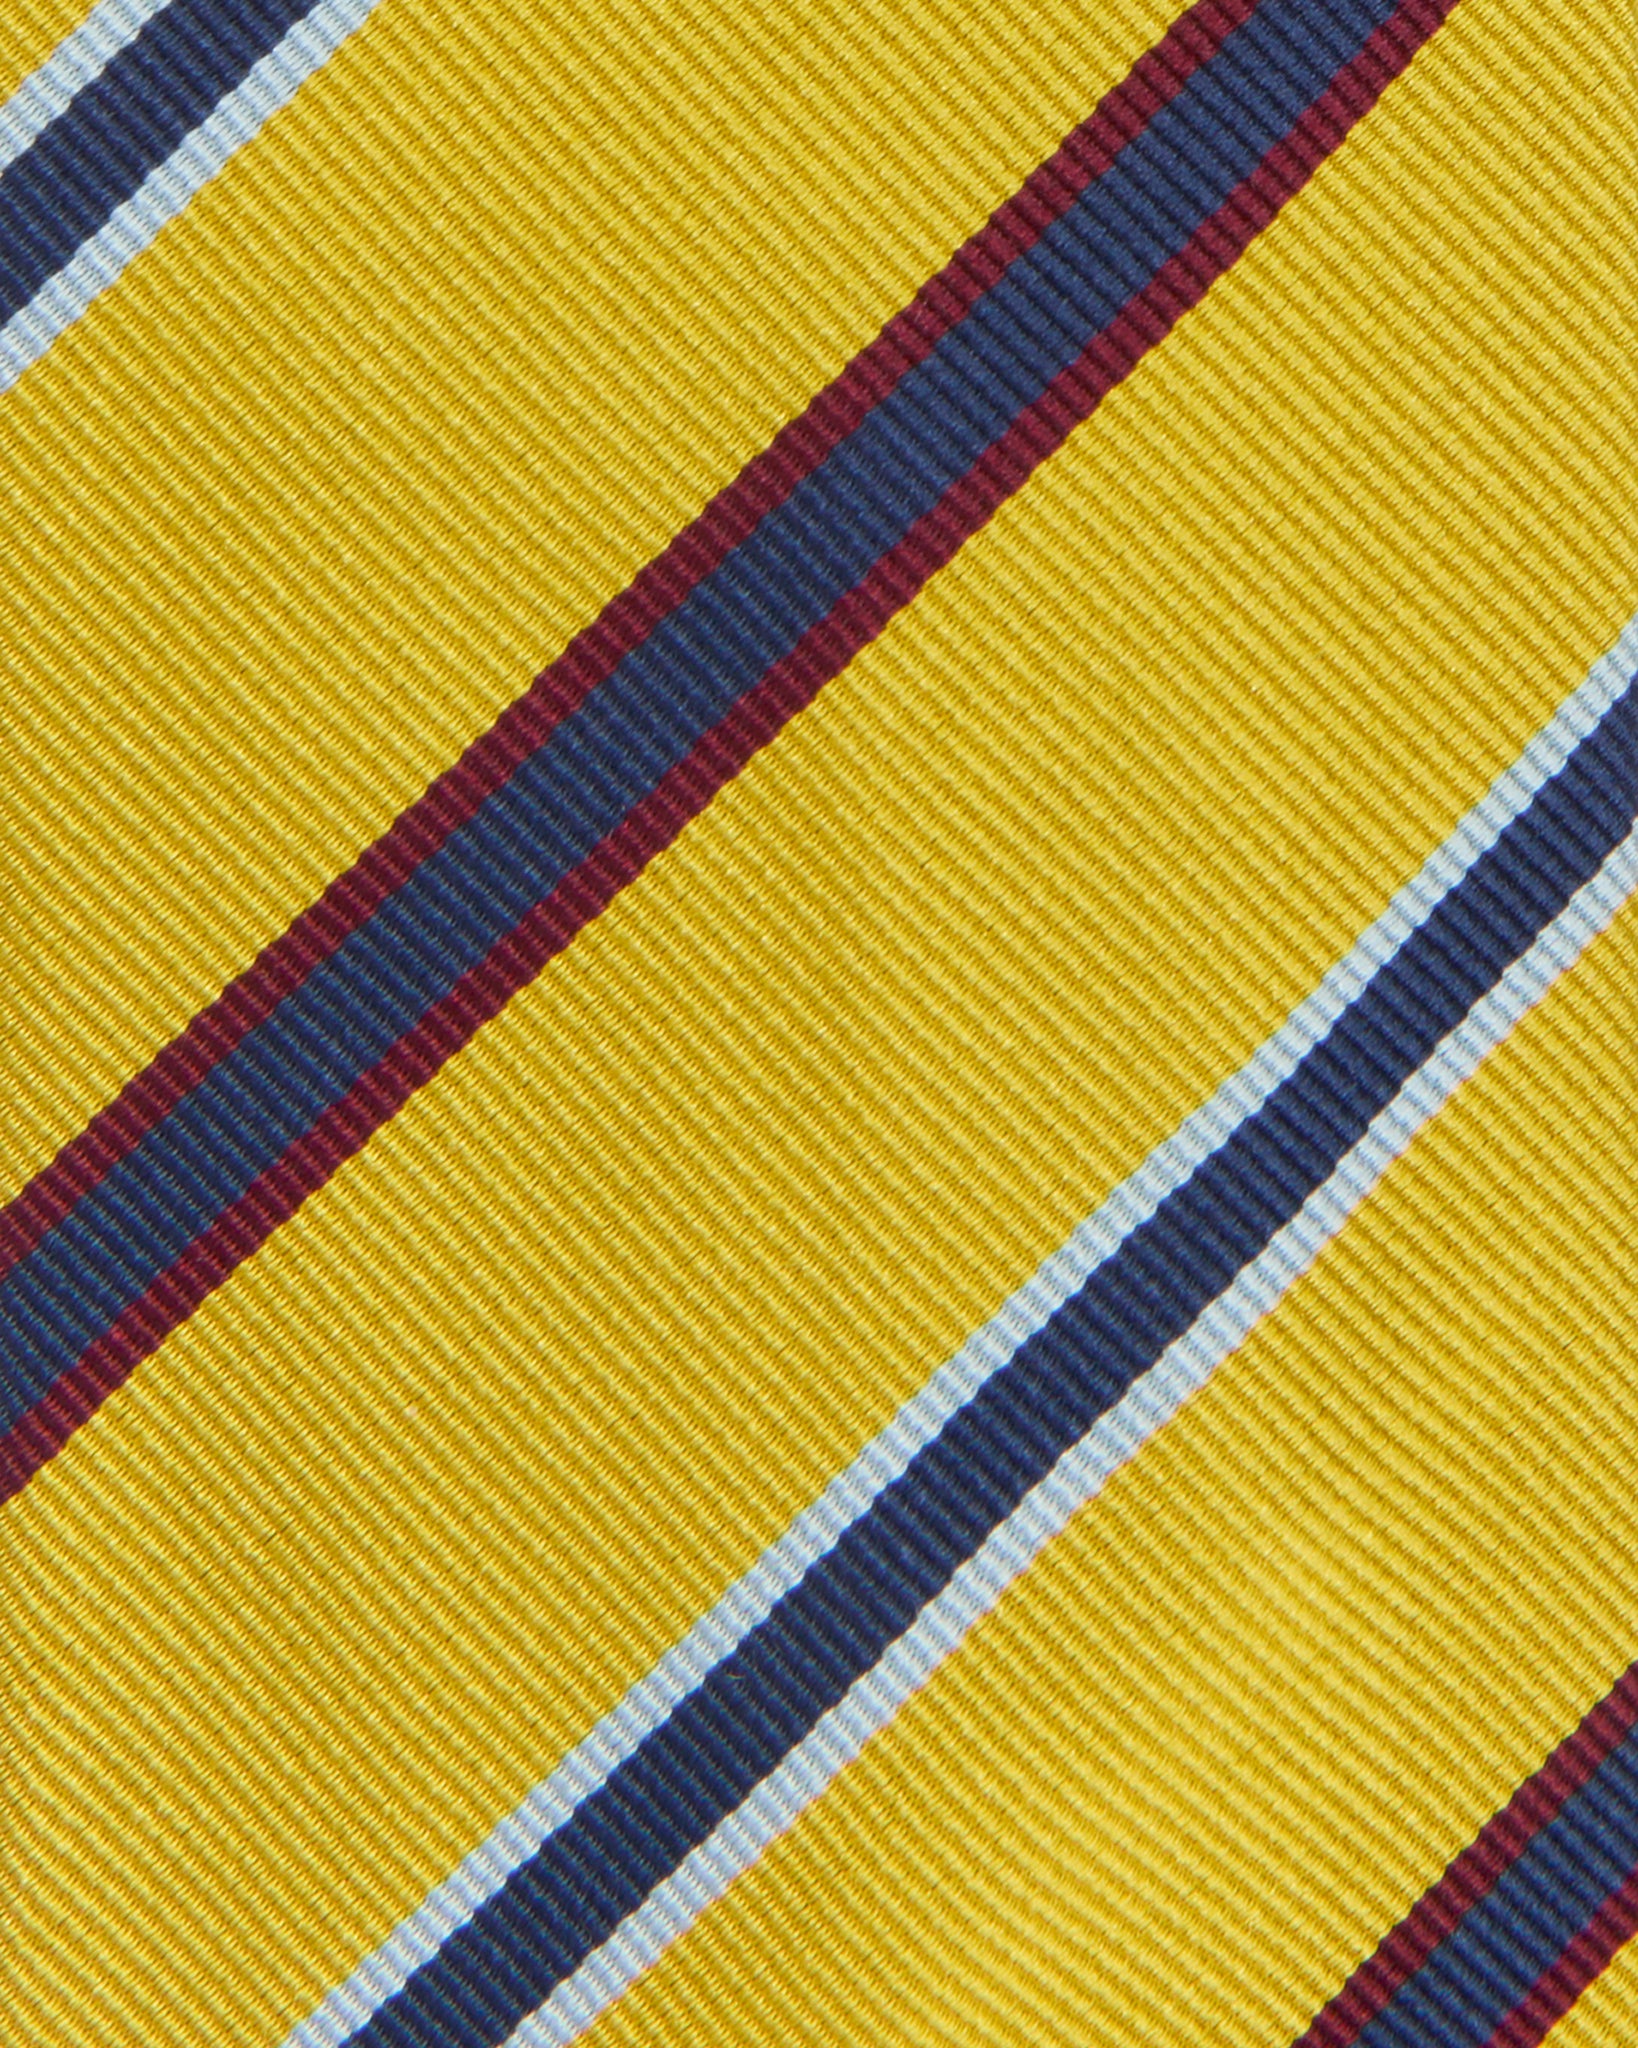 Silk Woven Tie in Yellow/Aqua/Brick Stripe